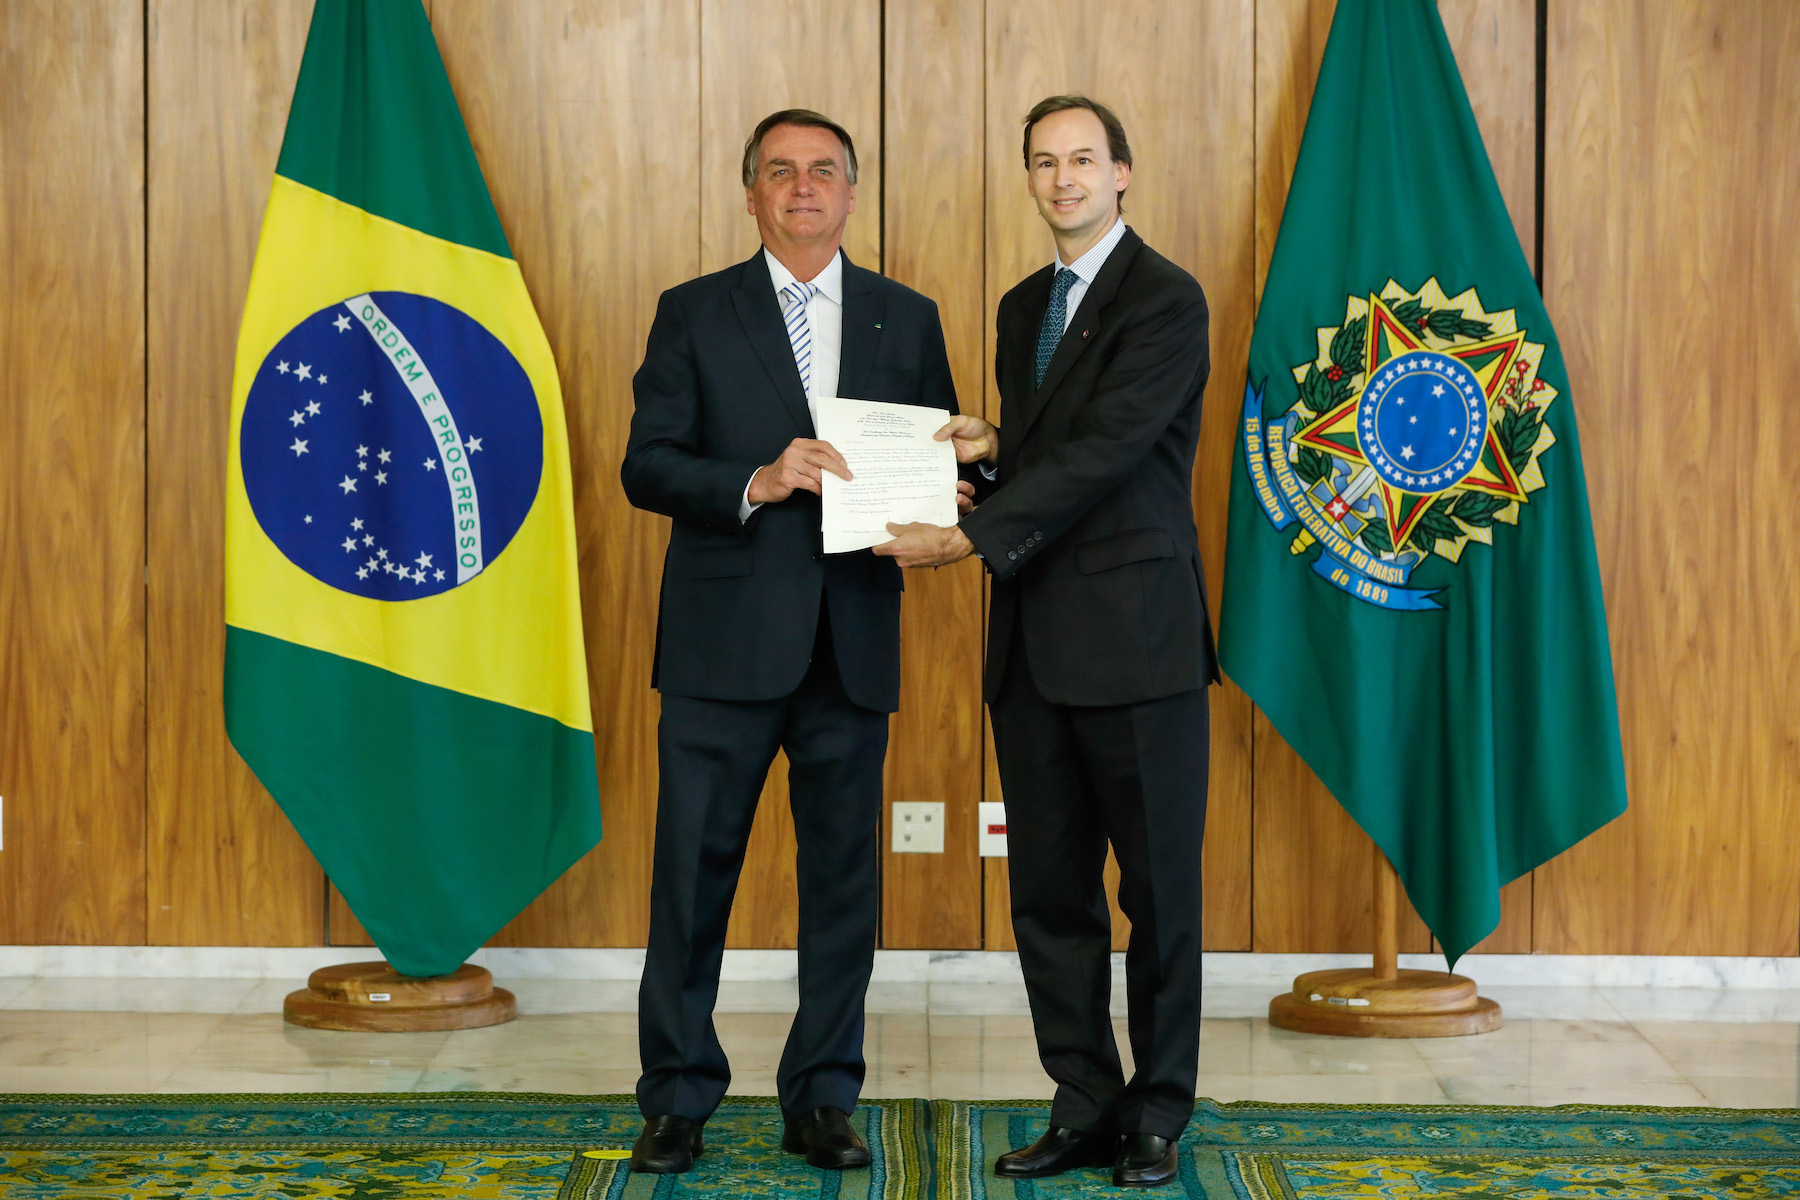 L’ambassadeur de l’Ordre de Malte auprès de la République Fédérative du Brésil a présenté ses lettres de creance